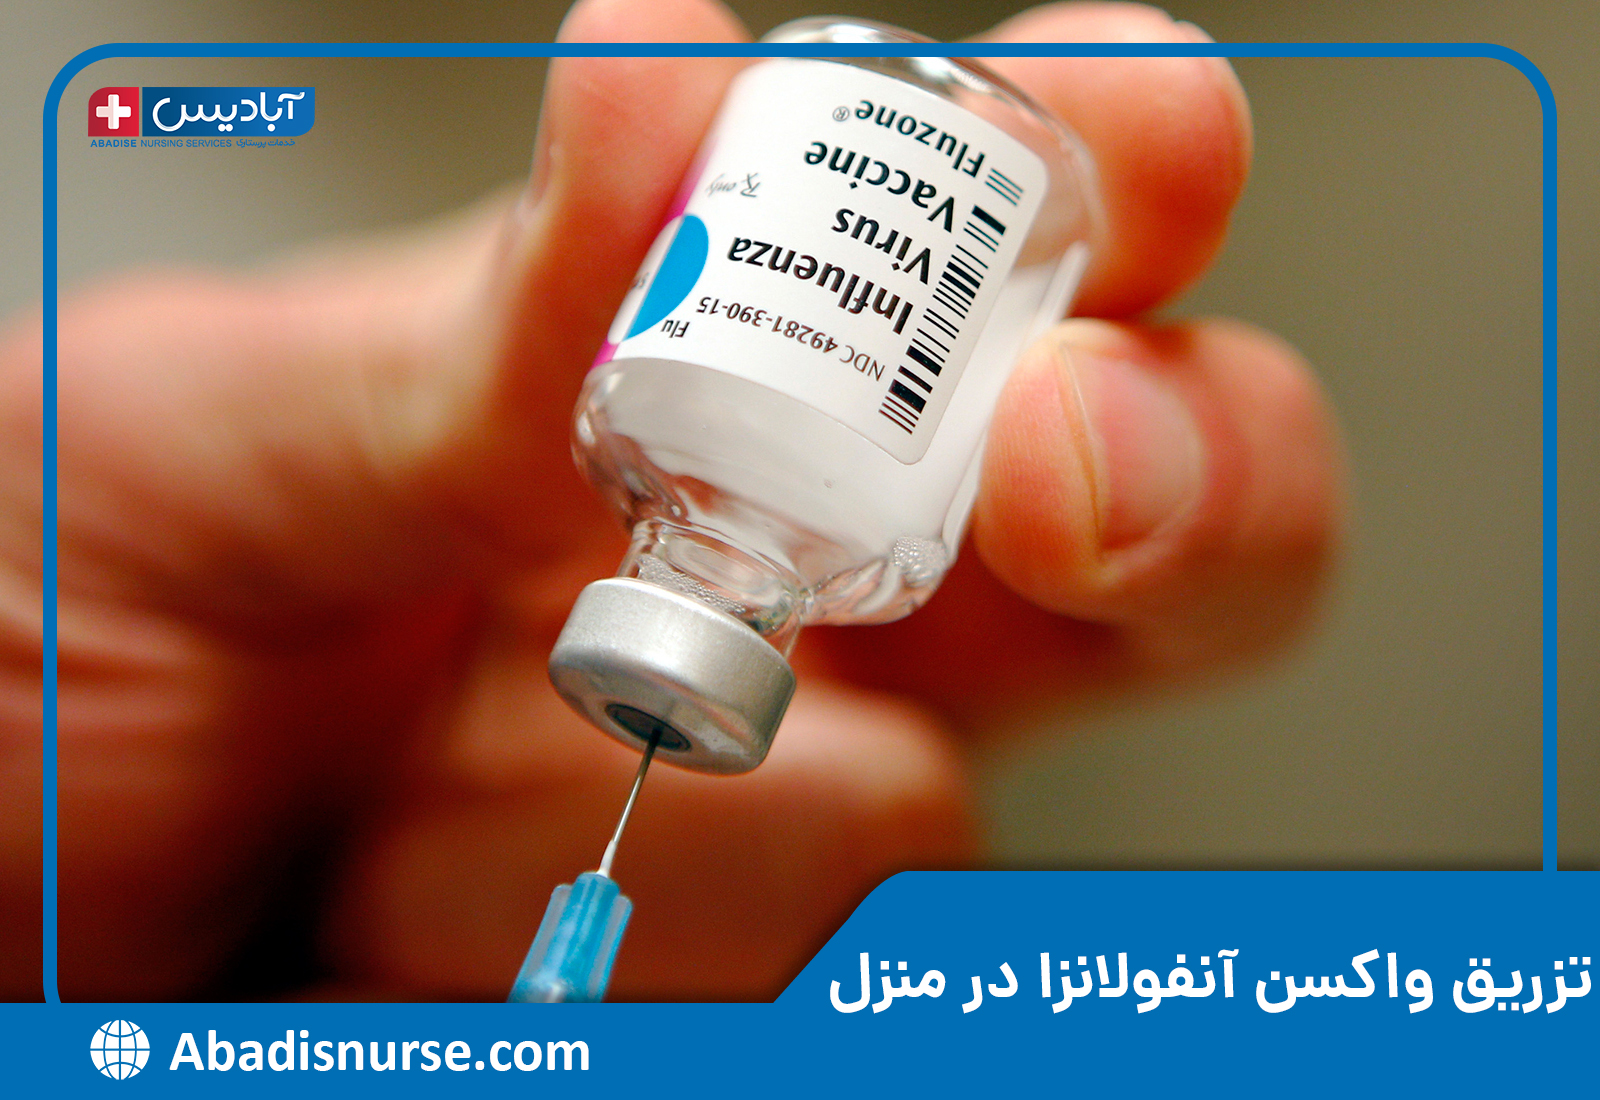 تزریق واکسن آنفولانزا در منزل - مرکز پرستاری آبادیس